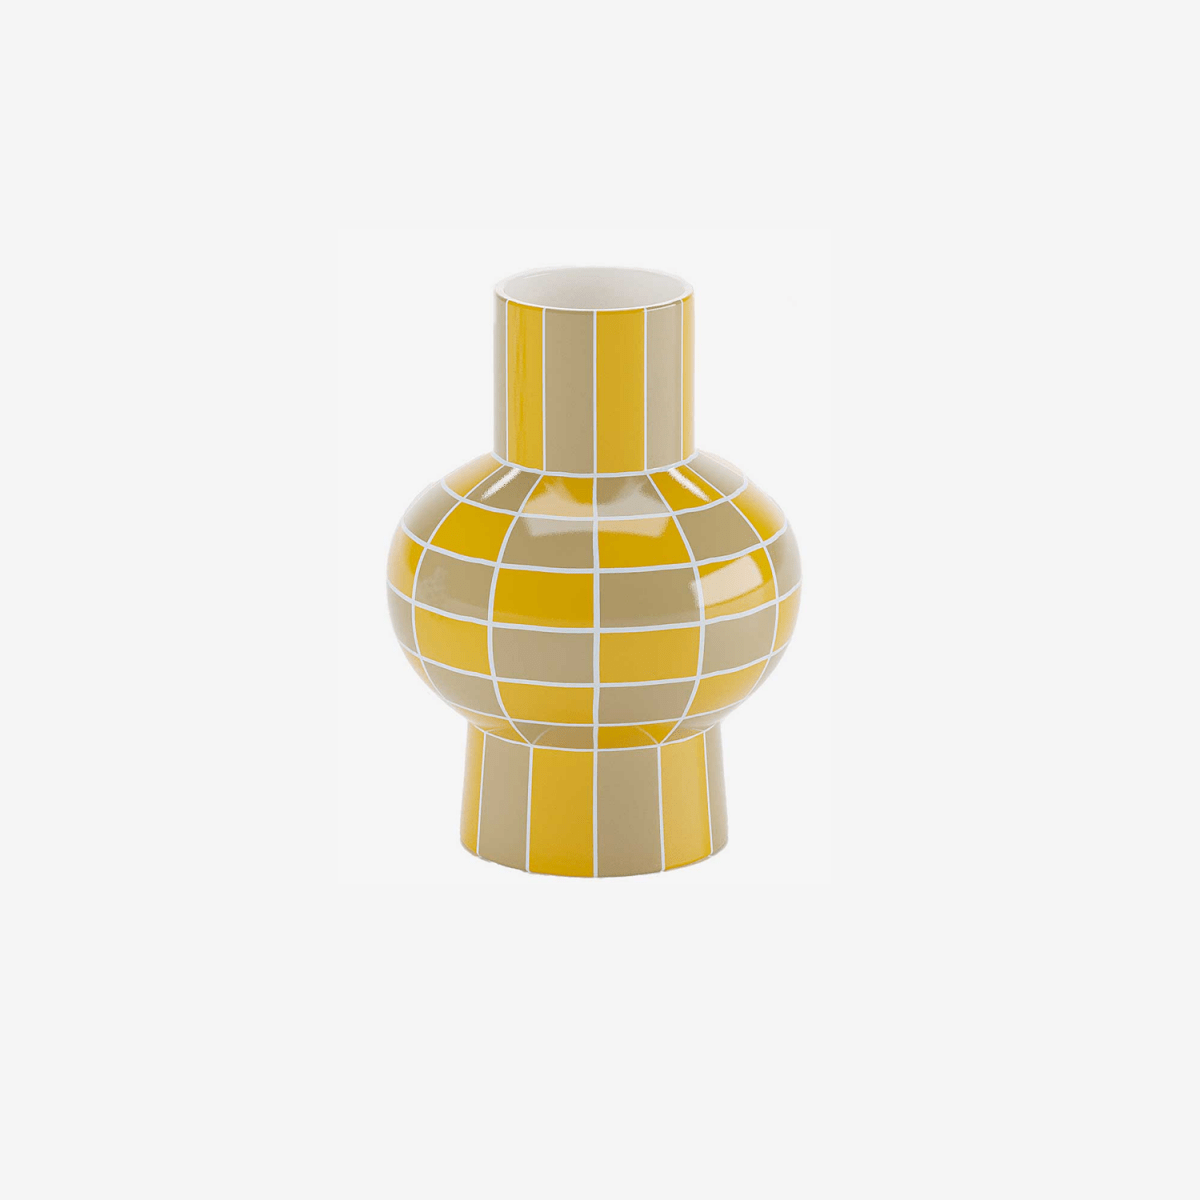 Ce vase en céramique brillante, avec sa forme originale et son motif damier jaune est un modèle d'élégance - Potiron Paris, accessoires déco design pas chère pour la maison de style contemporain